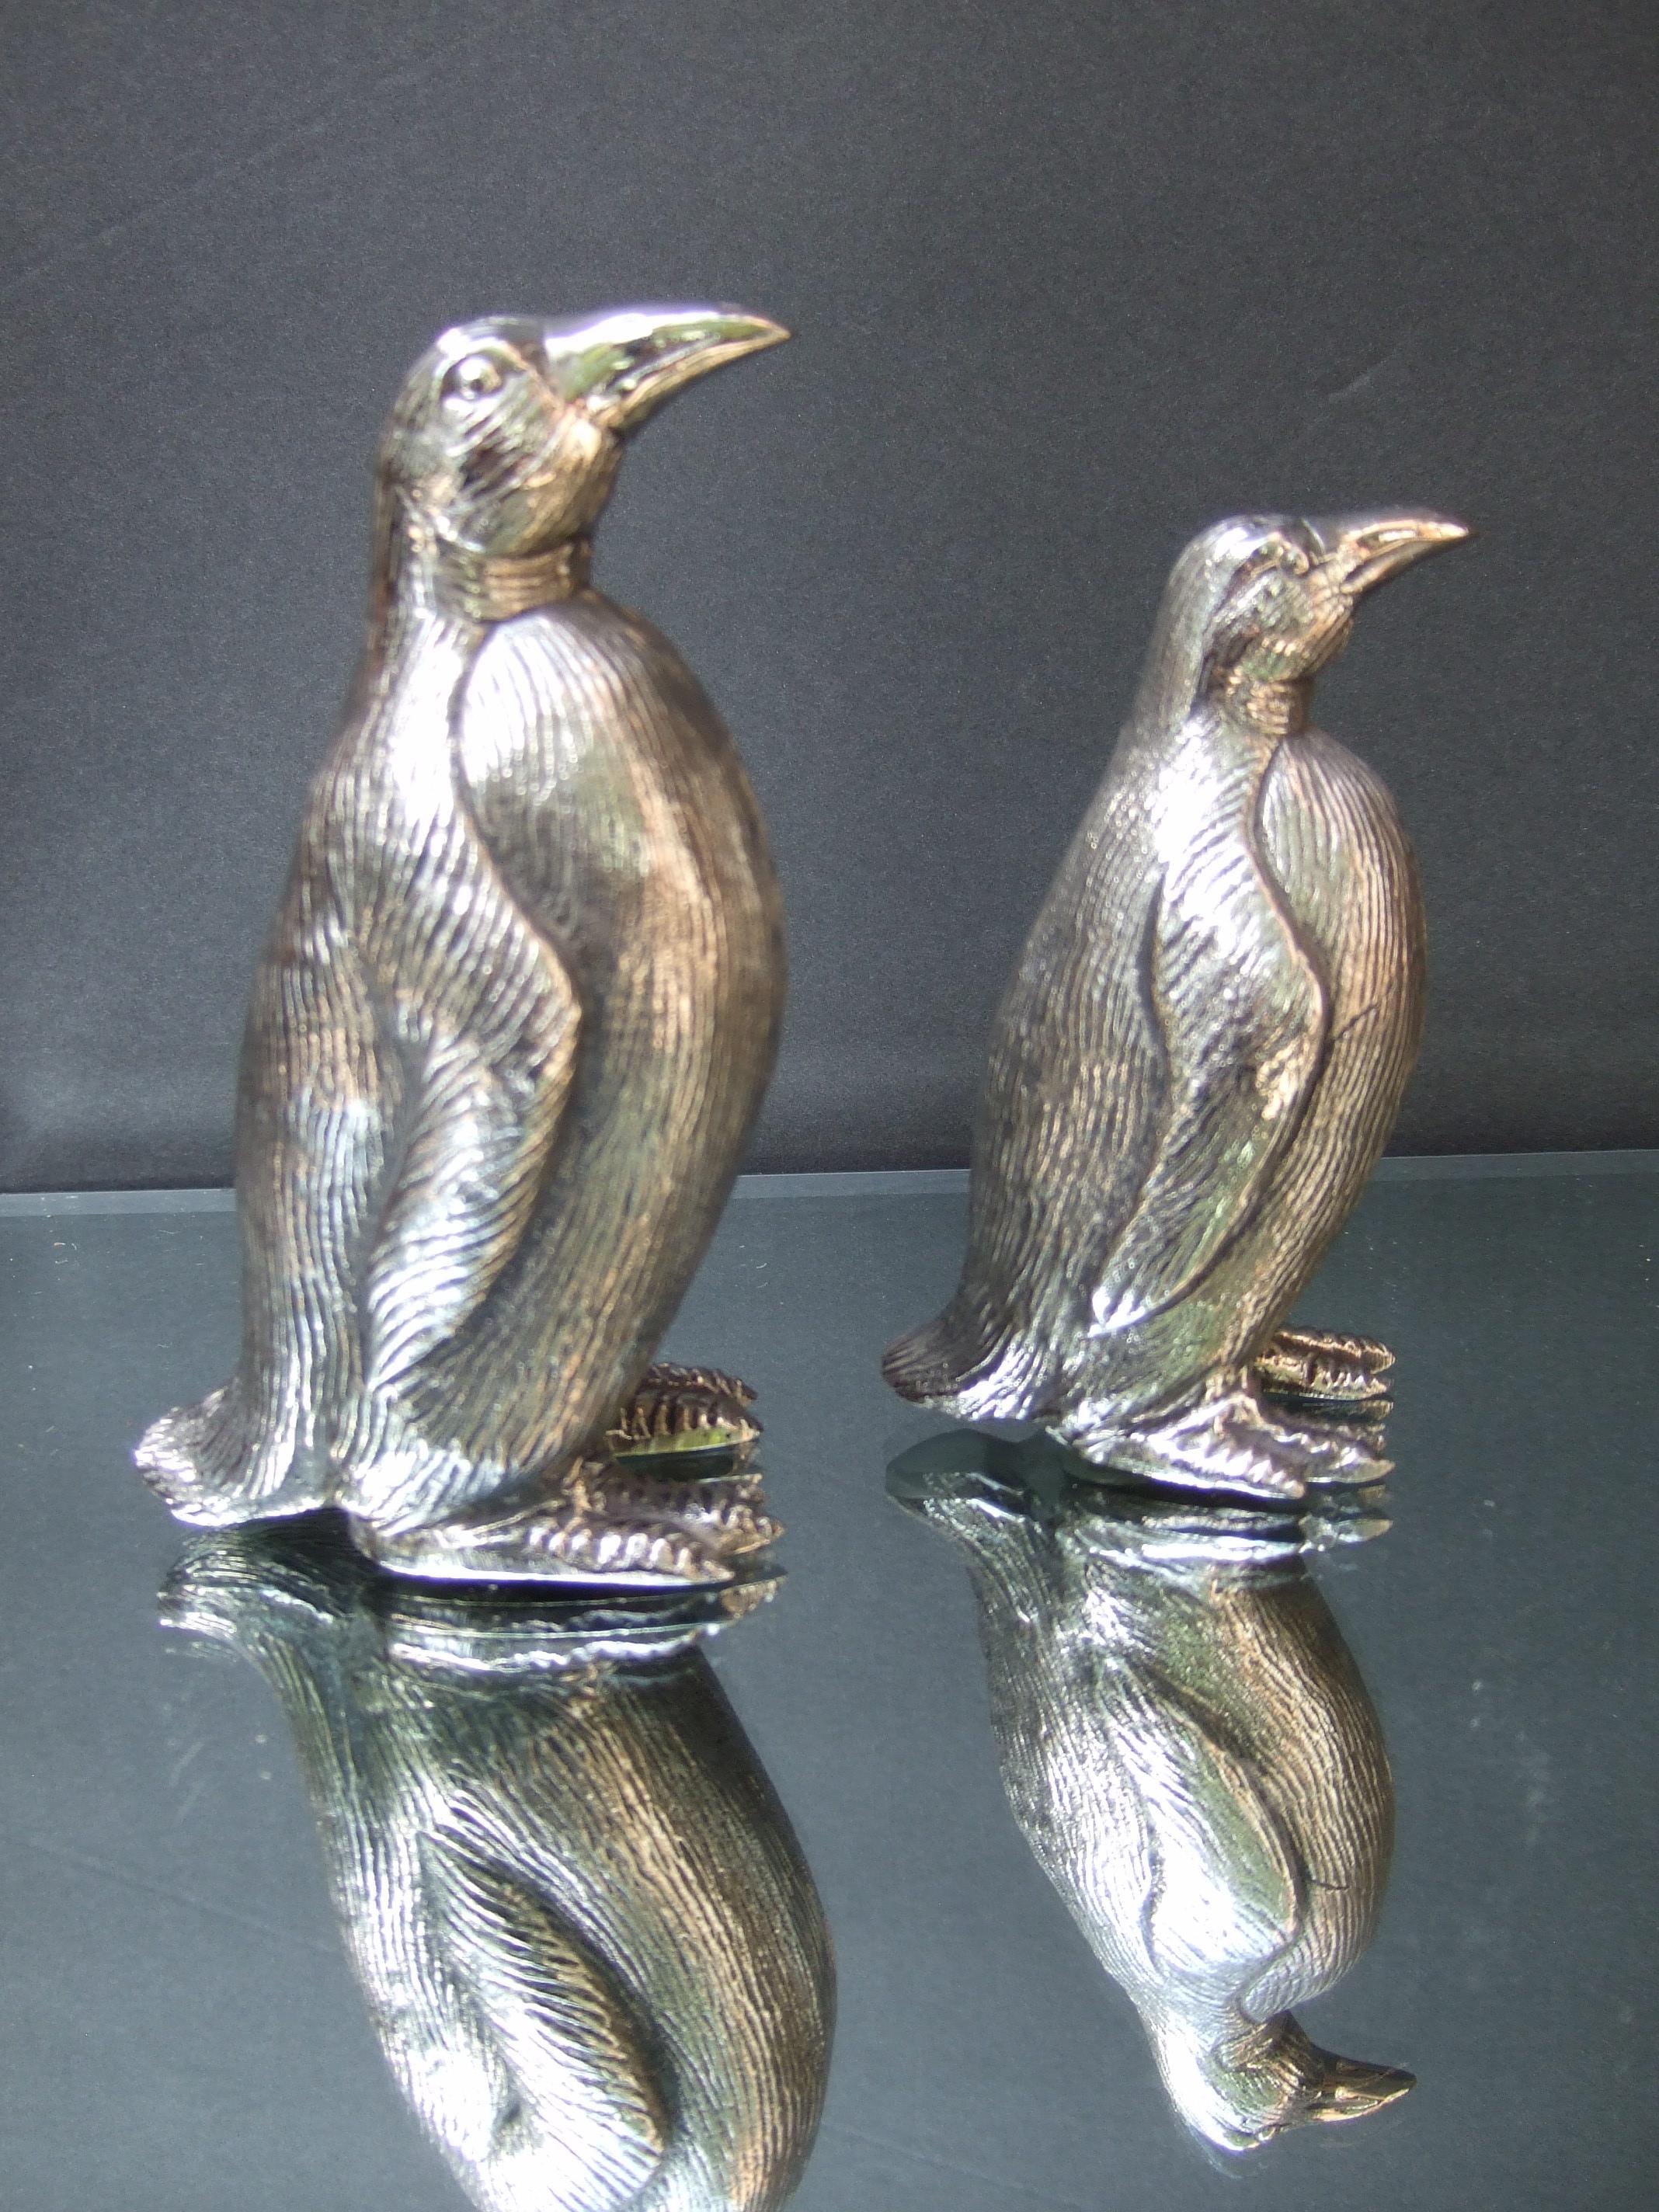 Gucci Italien Elegantes Paar silberner Salz- und Pfefferstreuer aus Metall, 1970er Jahre
Das liebenswerte Paar stilisierter Pinguinfiguren ist in abgestuften Höhen gestaltet 
Verziert mit geätzten Details, die ihre Federn nachahmen 
Das Paar Pinguin